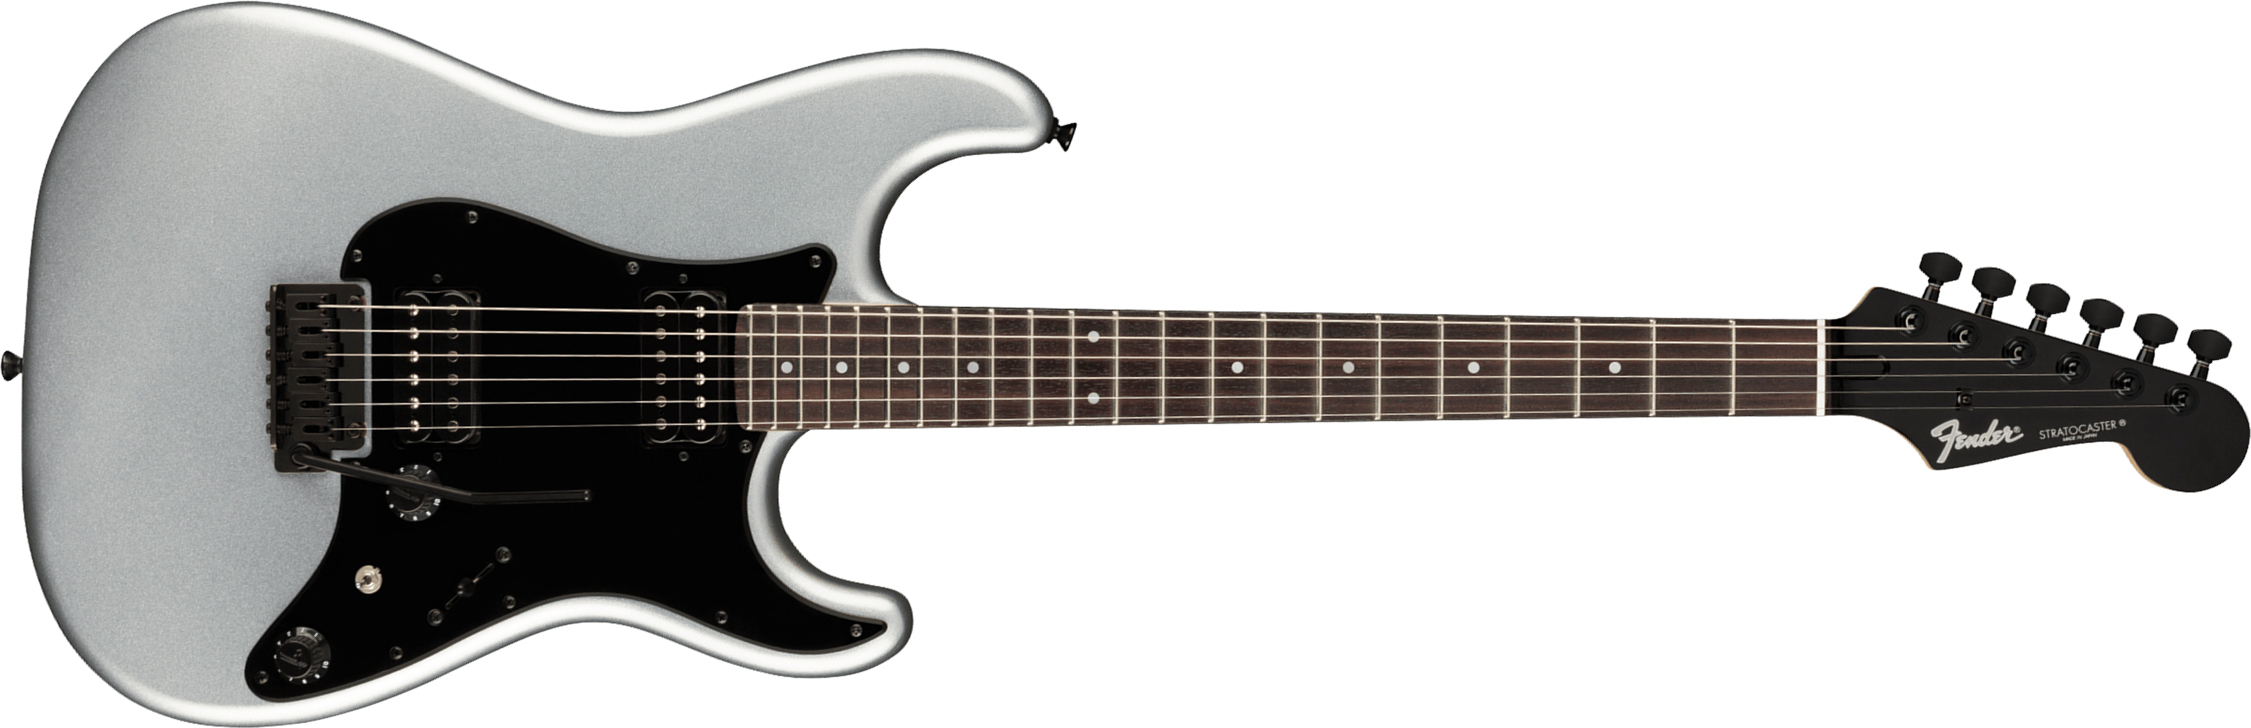 Fender Strat Boxer Hh Jap Trem Rw +housse - Inca Silver - Guitare Électrique Forme Str - Main picture